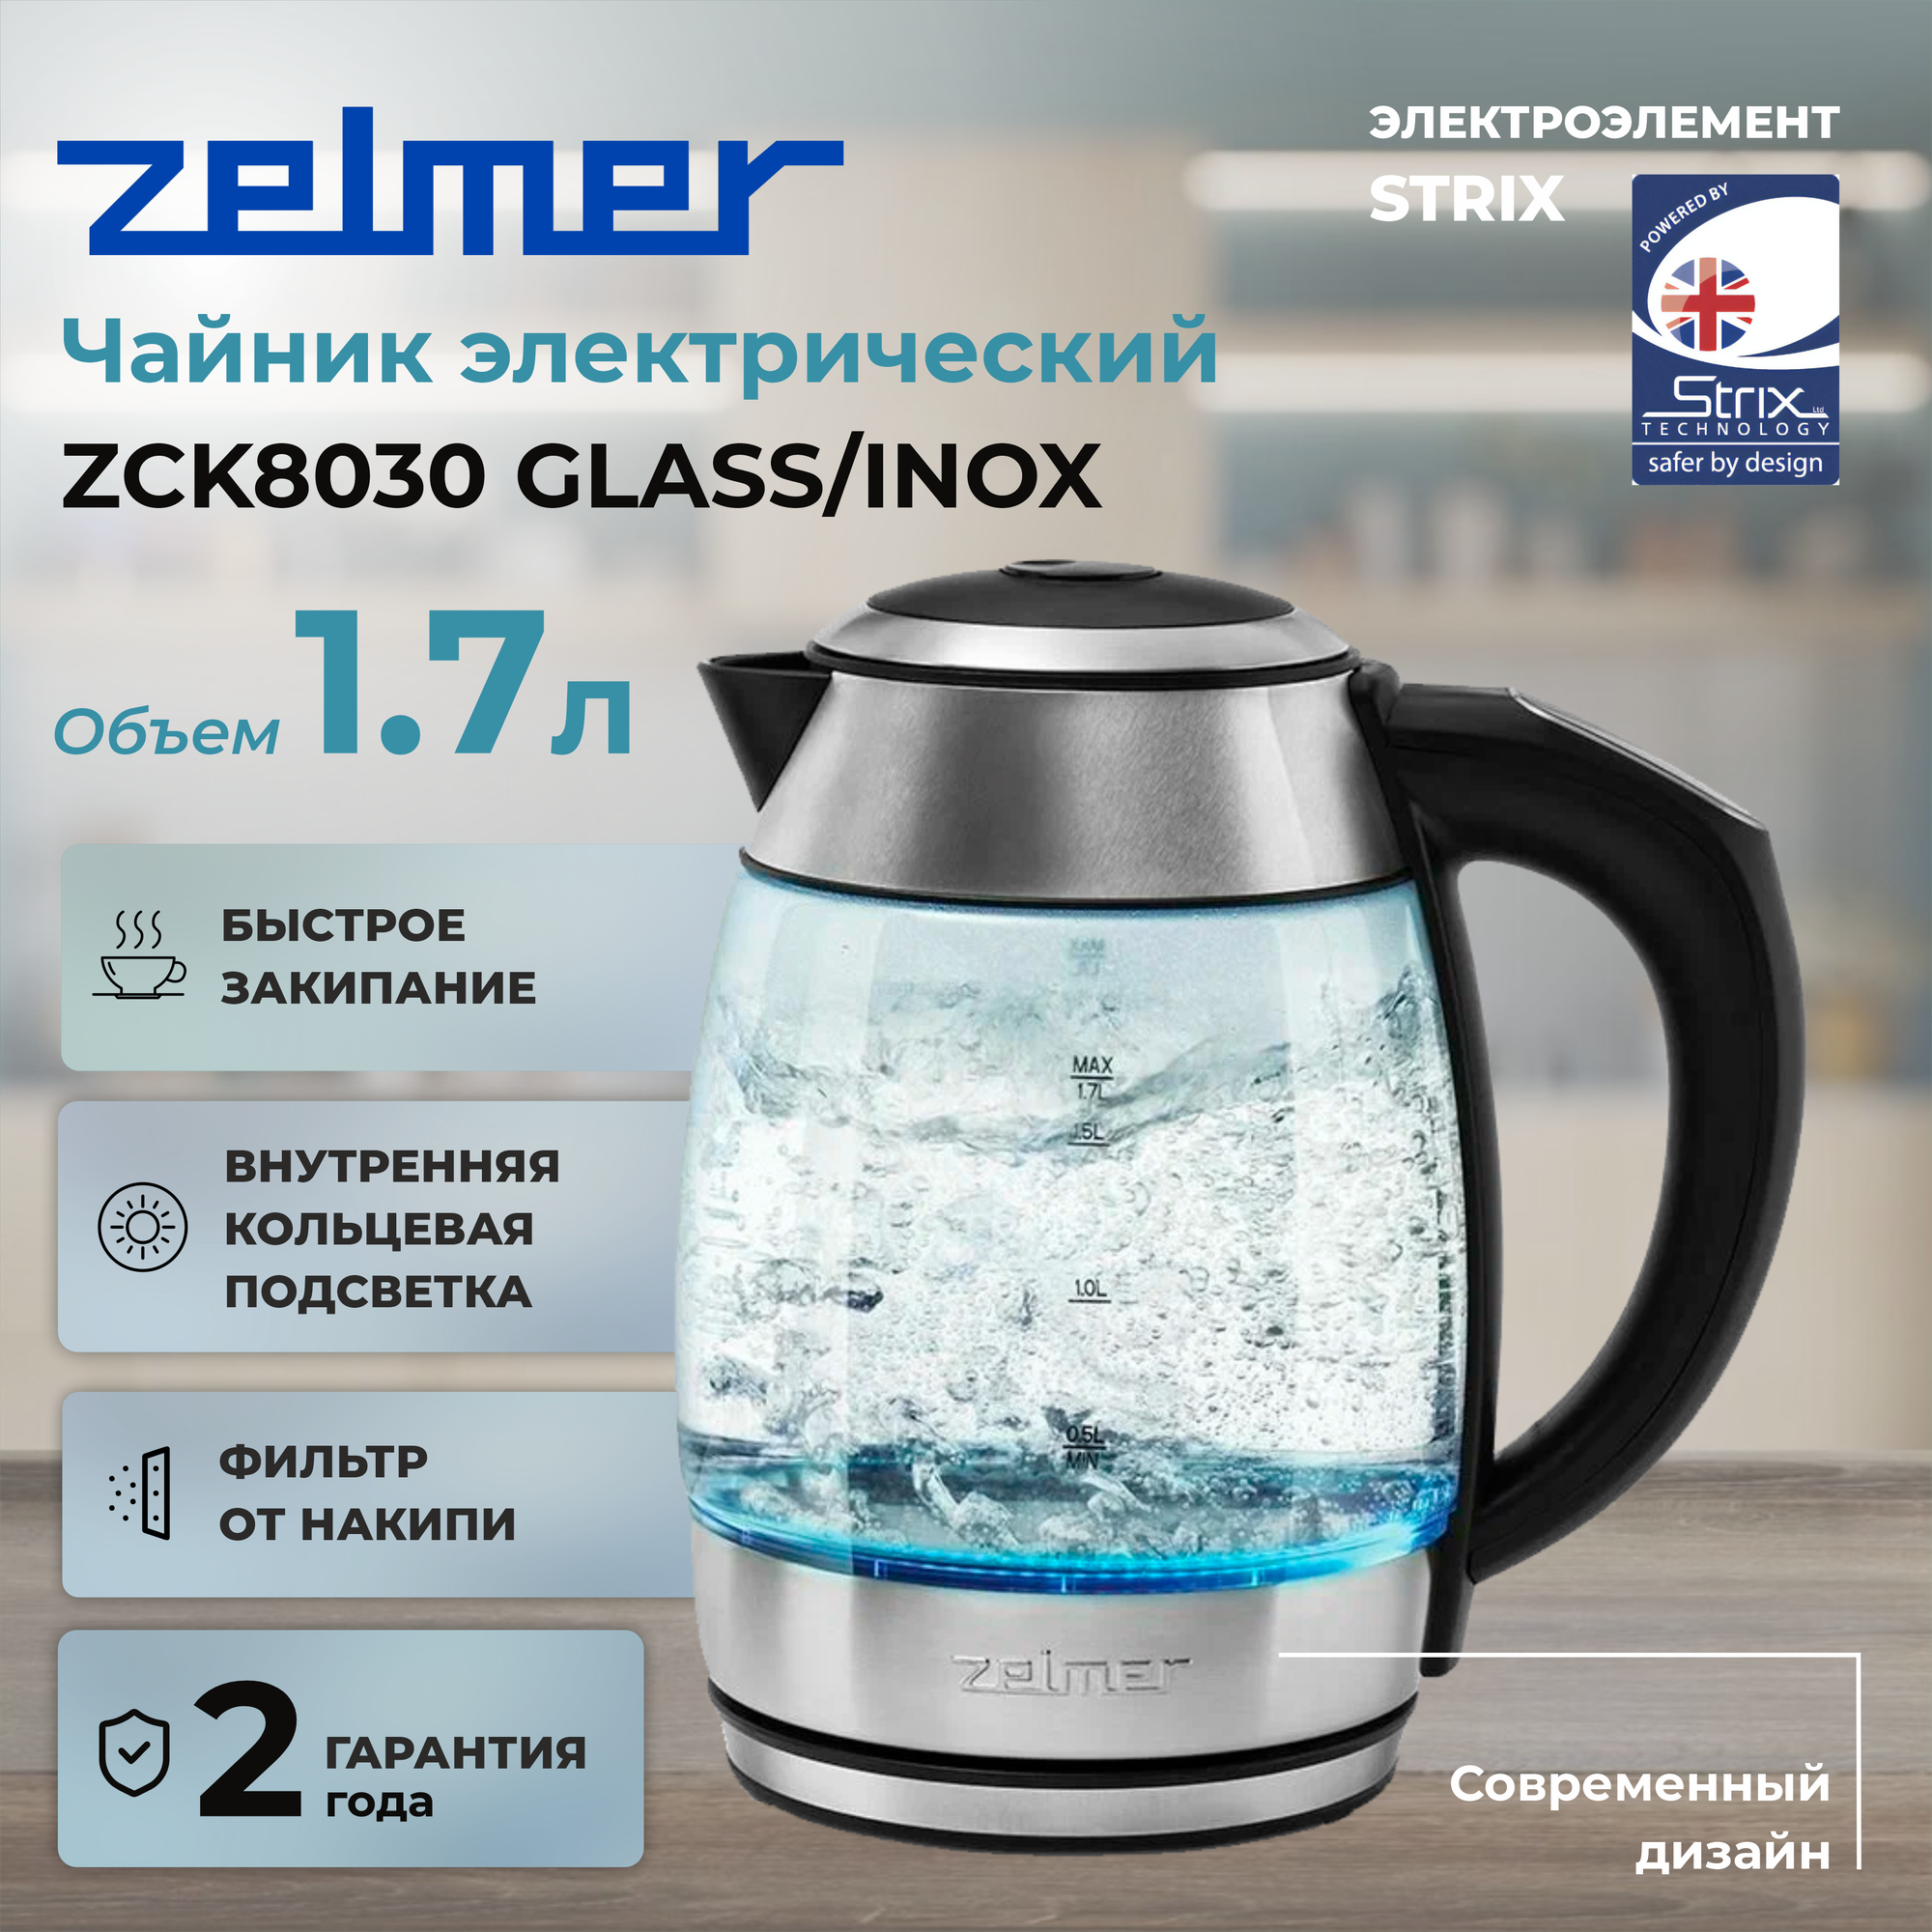 Чайник ZCK8030 GLASS/INOX ZELMER